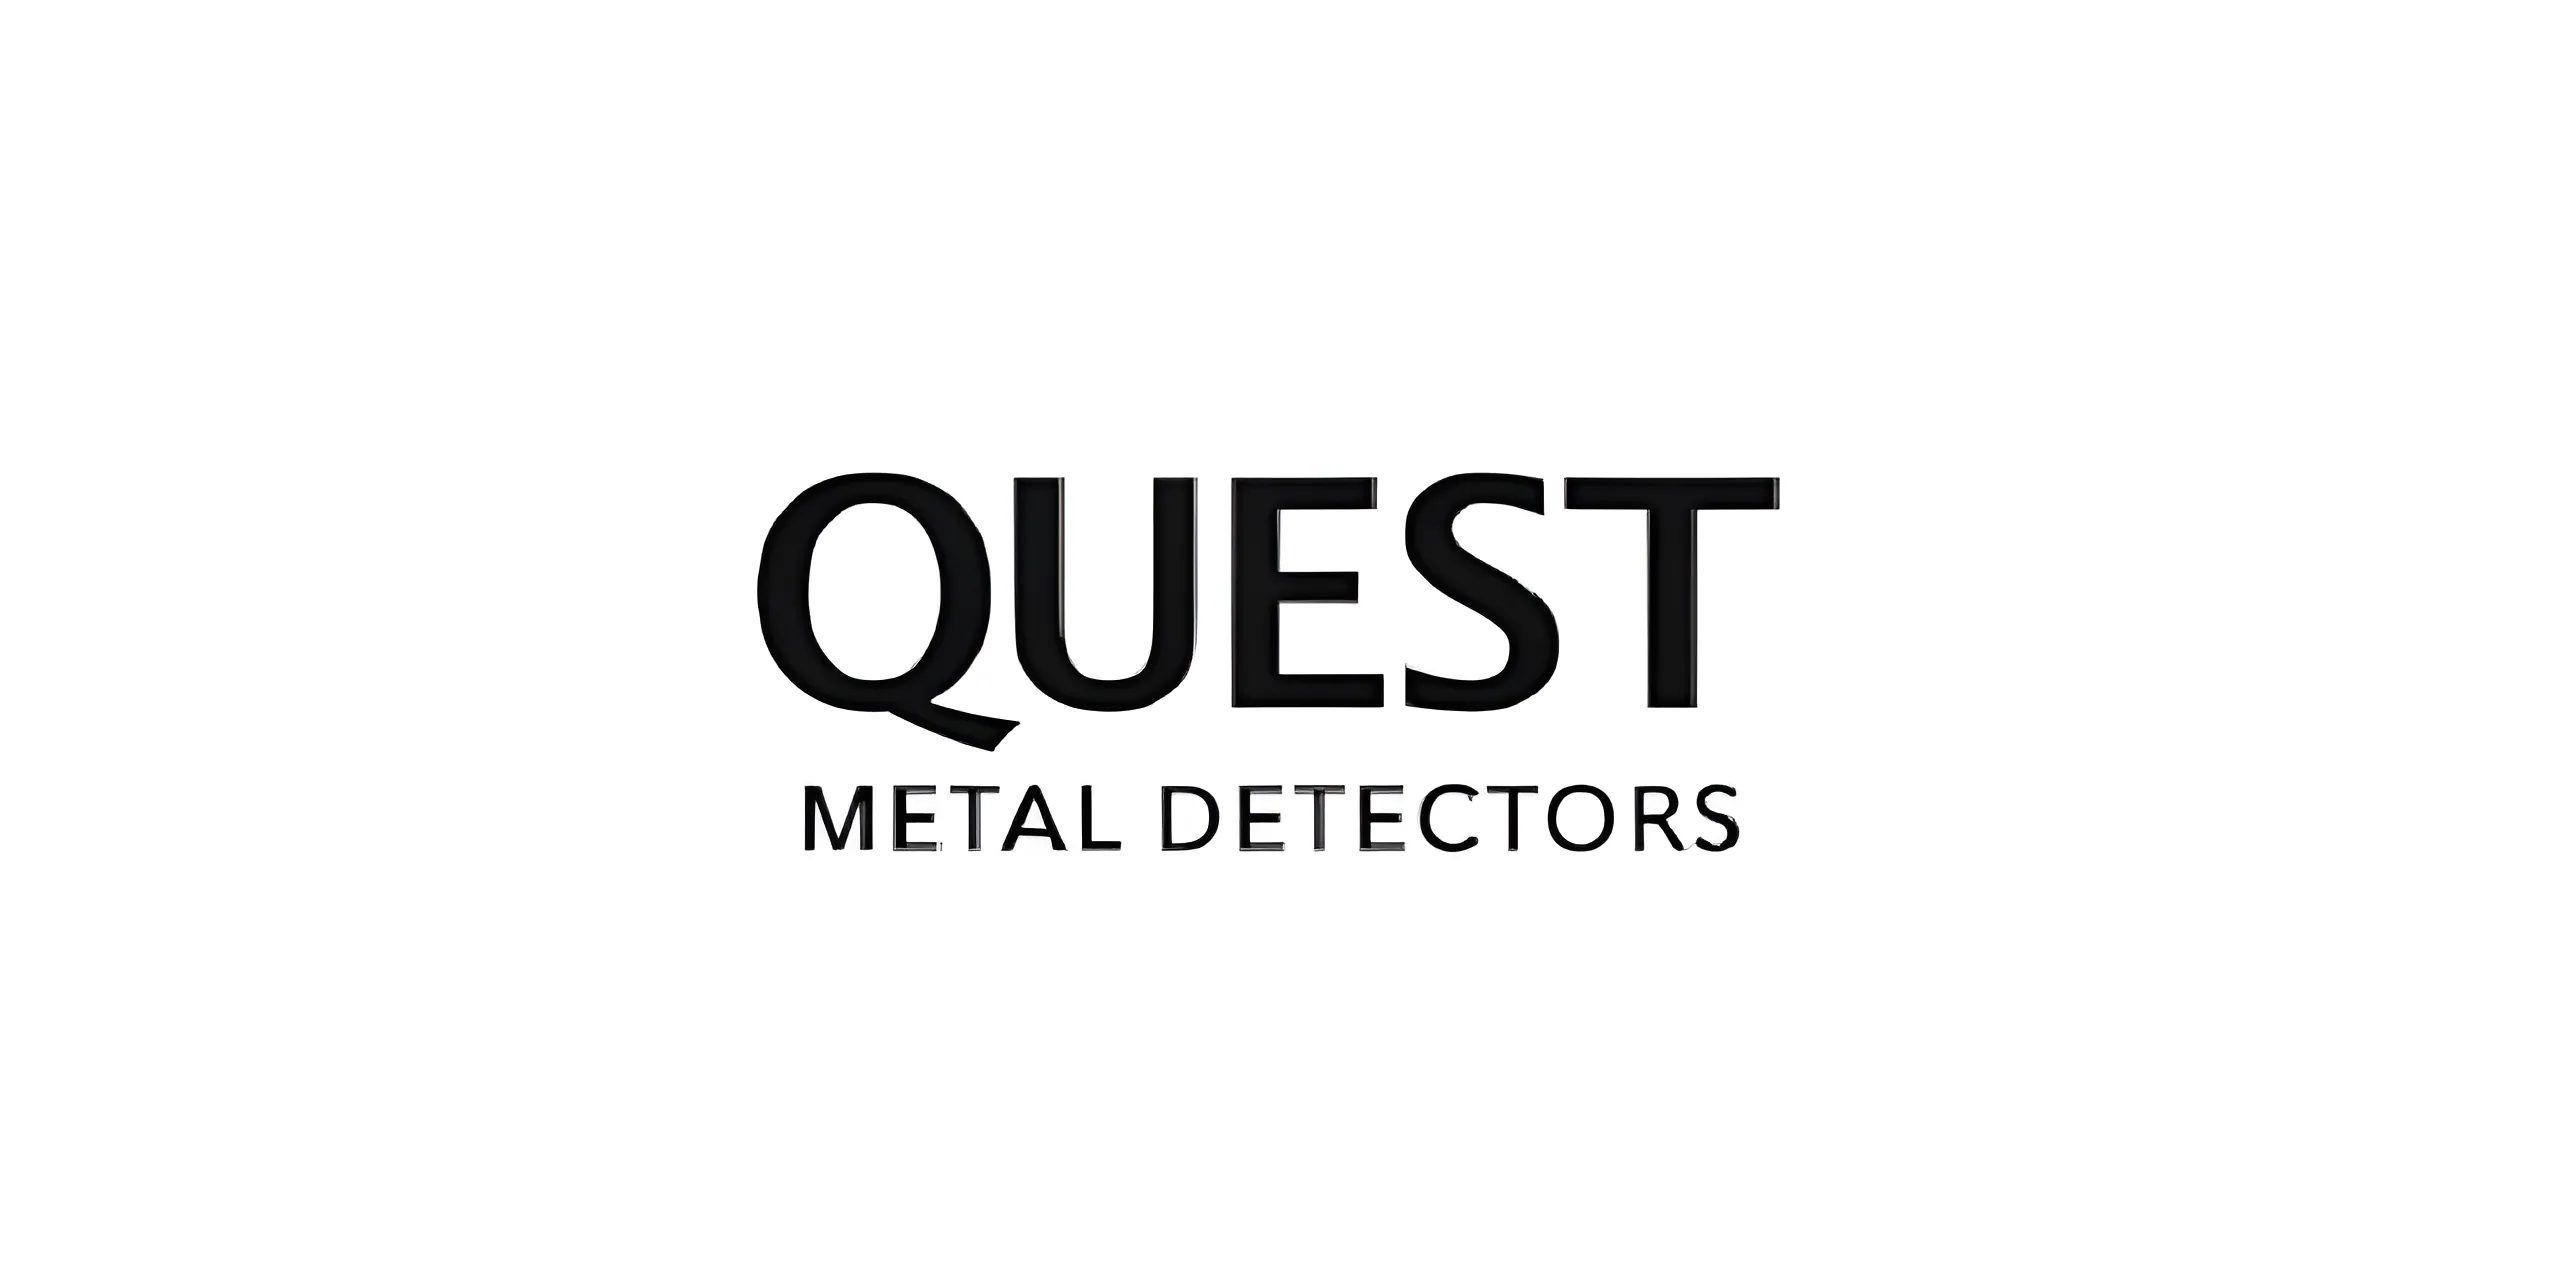 Quest Metal Detectors Company's LOGO